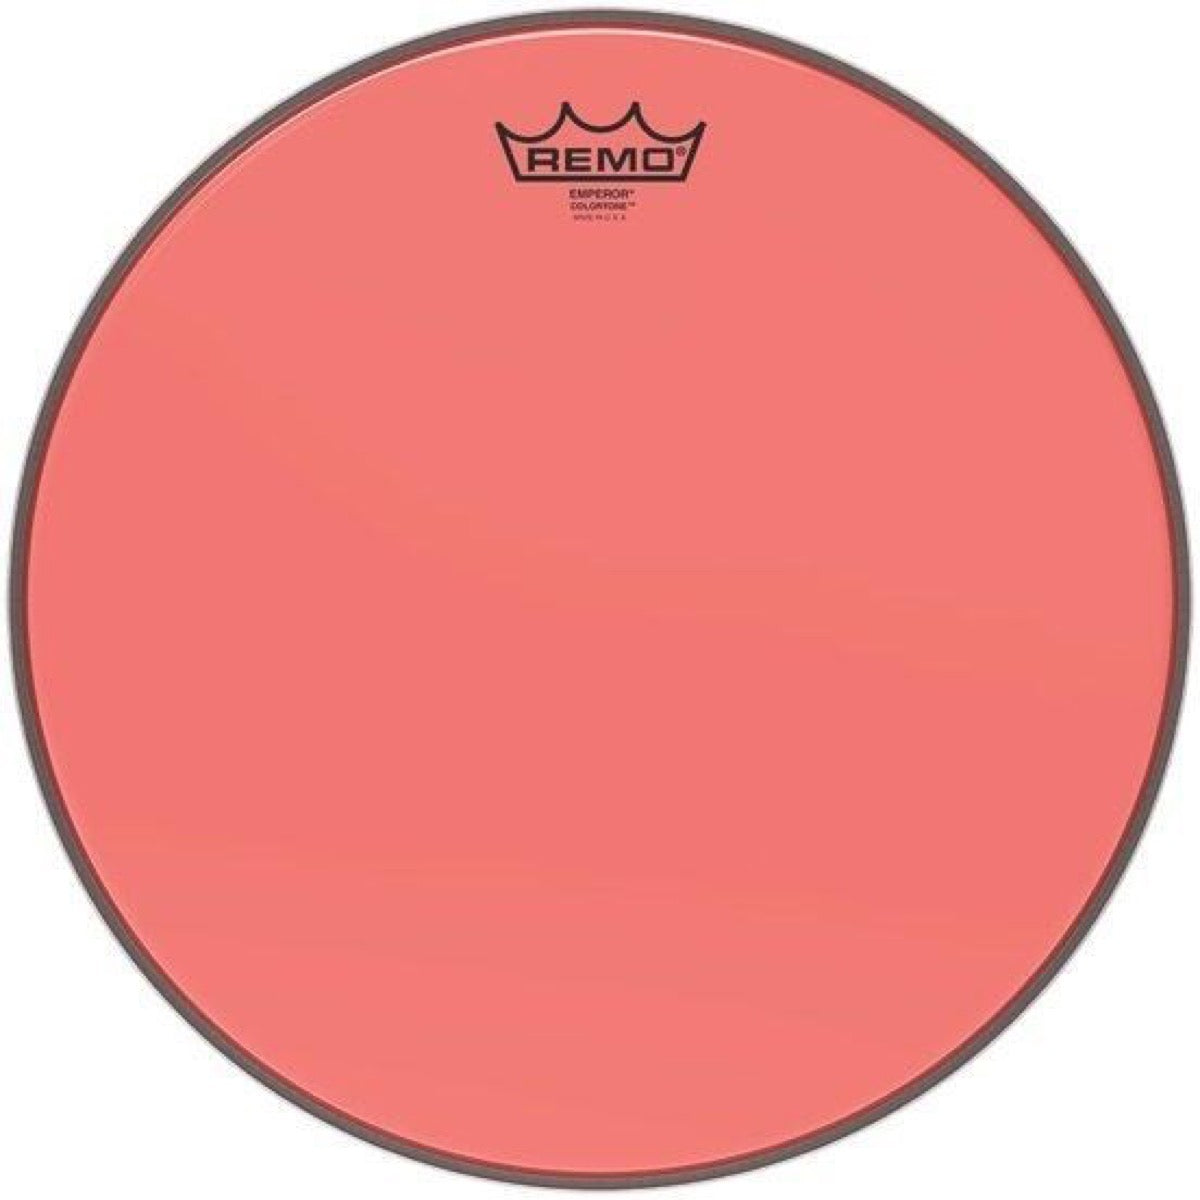 Remo Emperor Colortone Drumhead, Red, 8 Inch